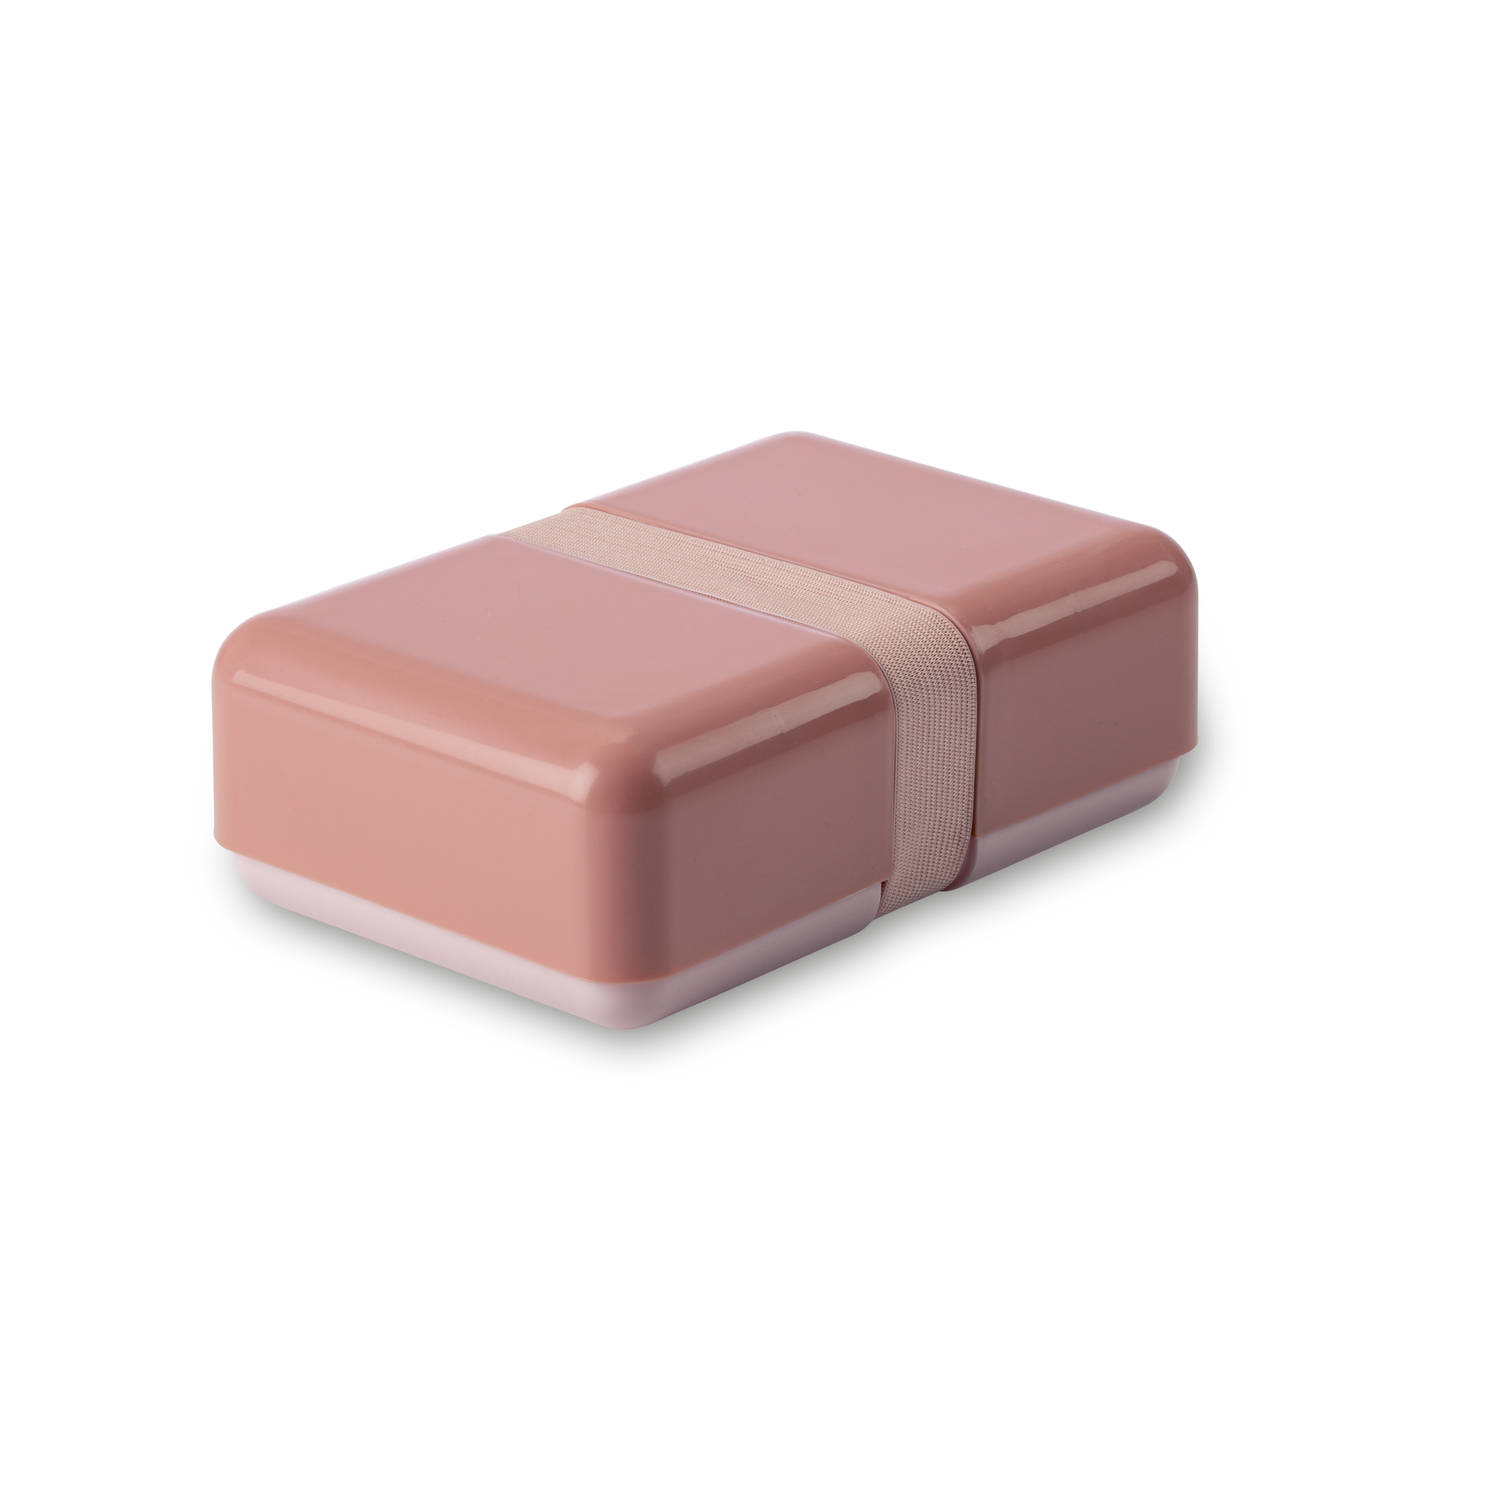 thee emulsie zwaan Blokker basic lunchbox - Roze | Blokker